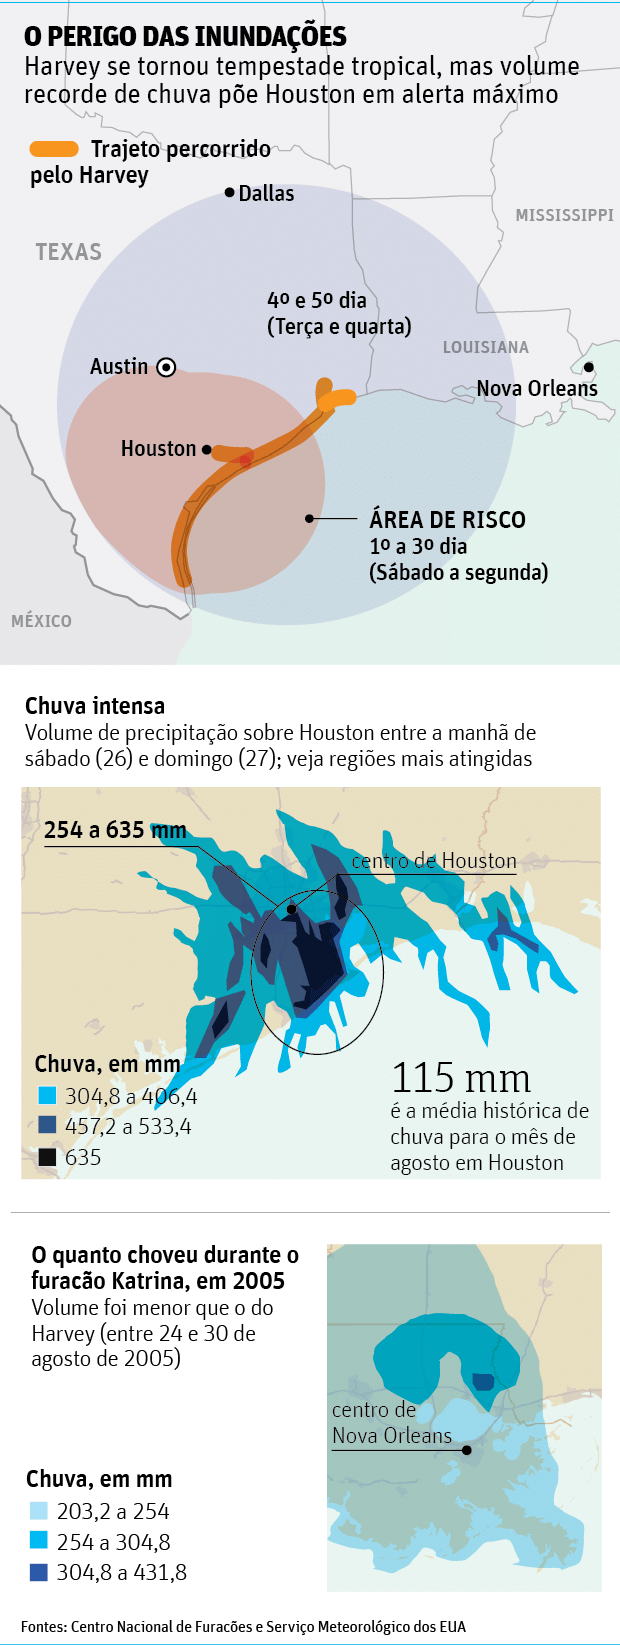 O PERIGO DAS INUNDAES - Harvey se tornou tempestade tropical, mas volume recorde de chuva pe Houston em alerta mximo